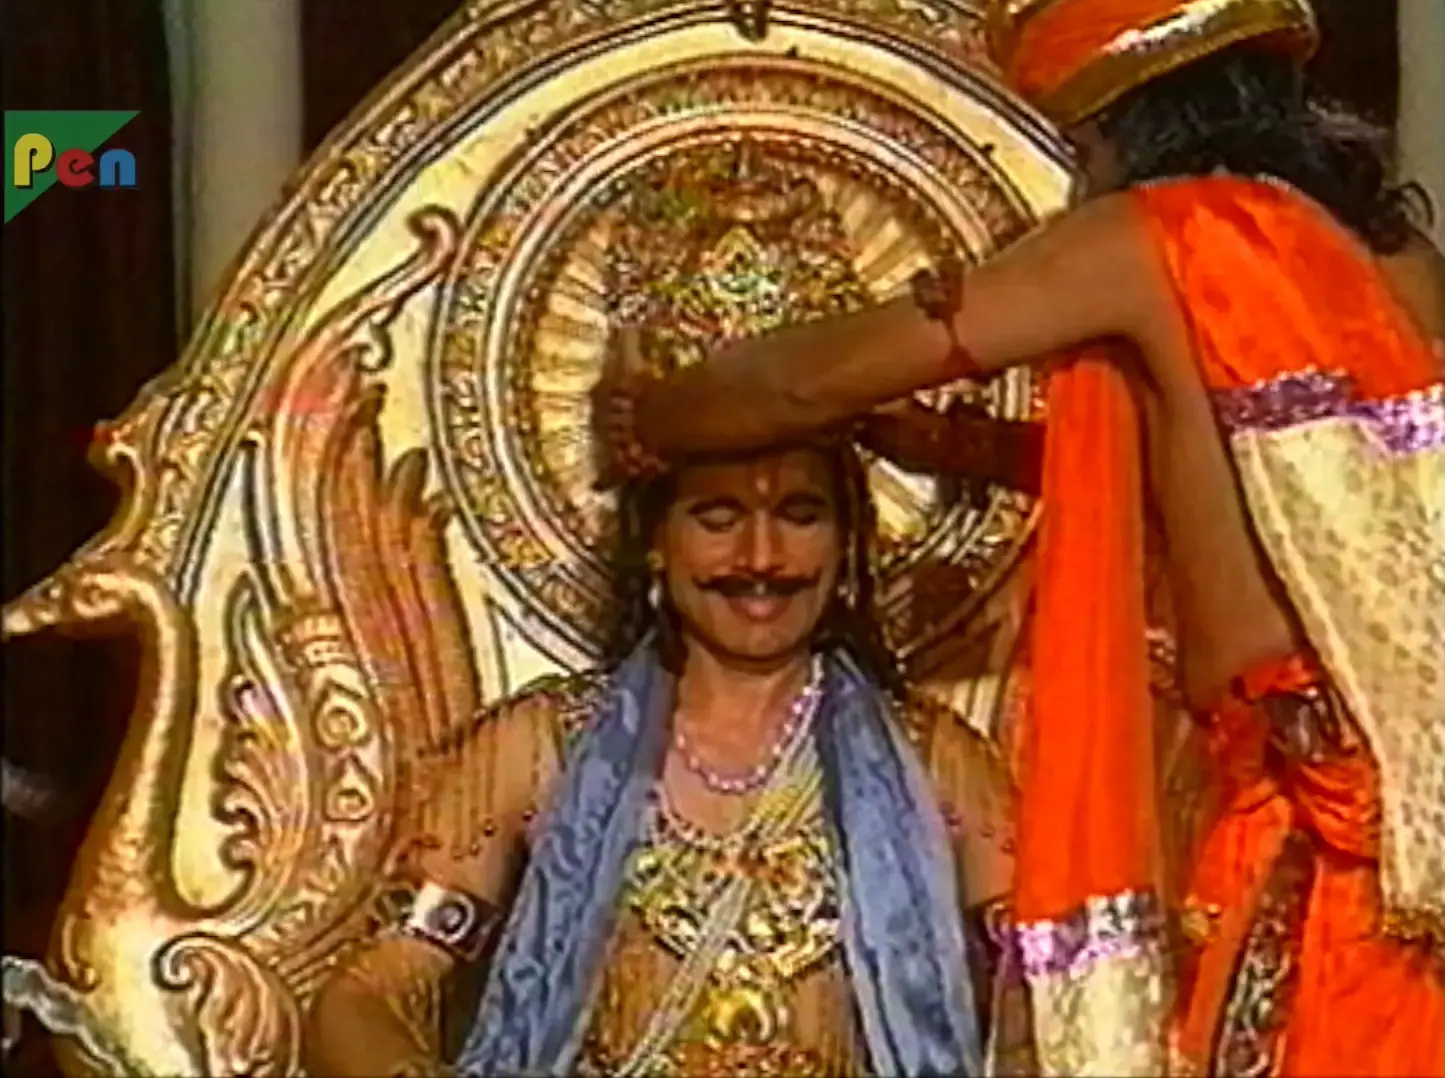 Pandu is crowned king